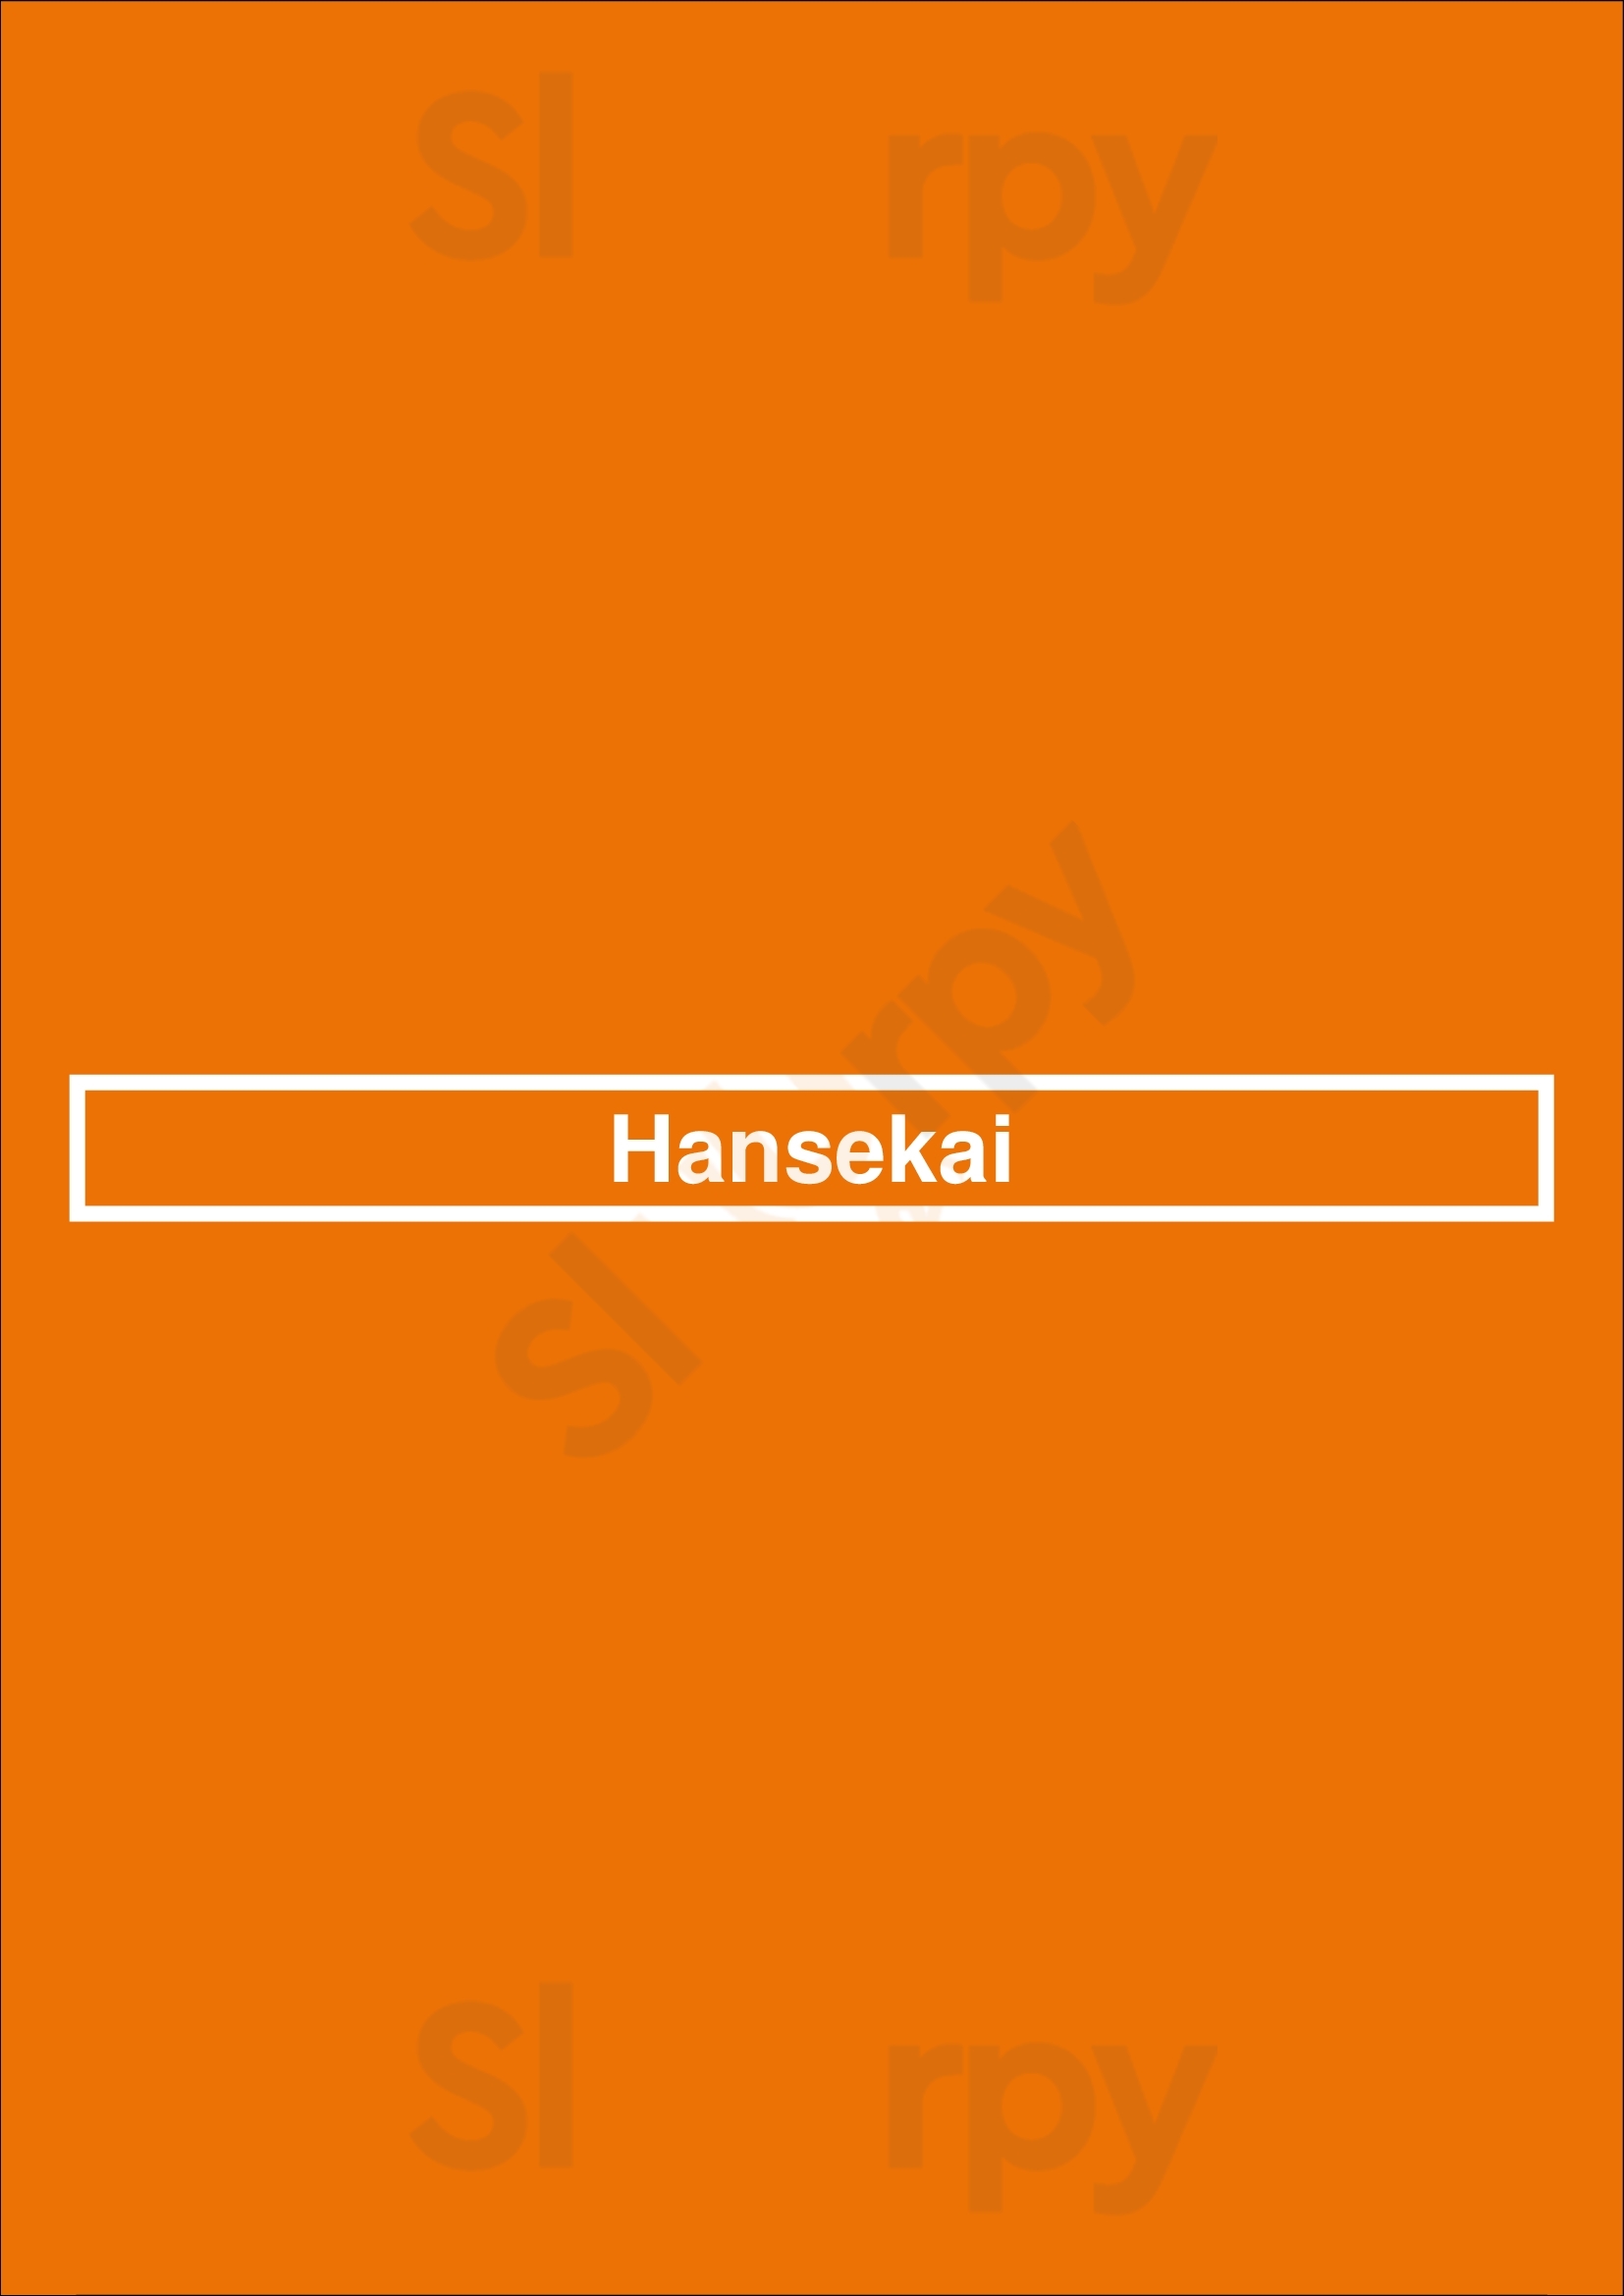 Hansekai Hamburg Menu - 1